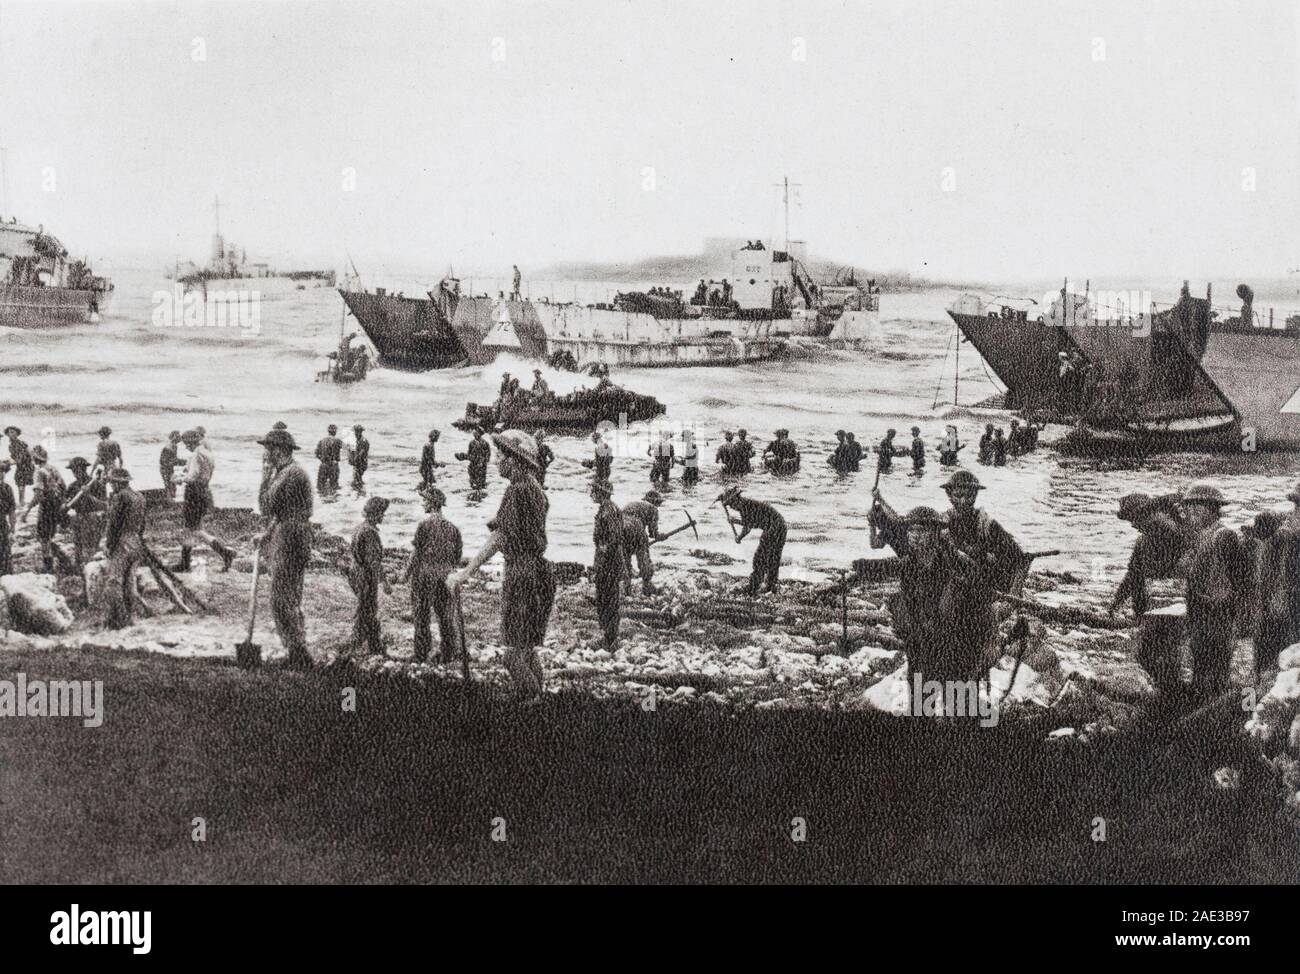 Die Invasion der Alliierten auf Sizilien. Am 10. Juli 1943, in der Dämmerung, alliierte Truppen Sizilien erobert. Männer und mareriel Herde zu den Stränden. In einer Angelegenheit von Stunden, ein Stockfoto